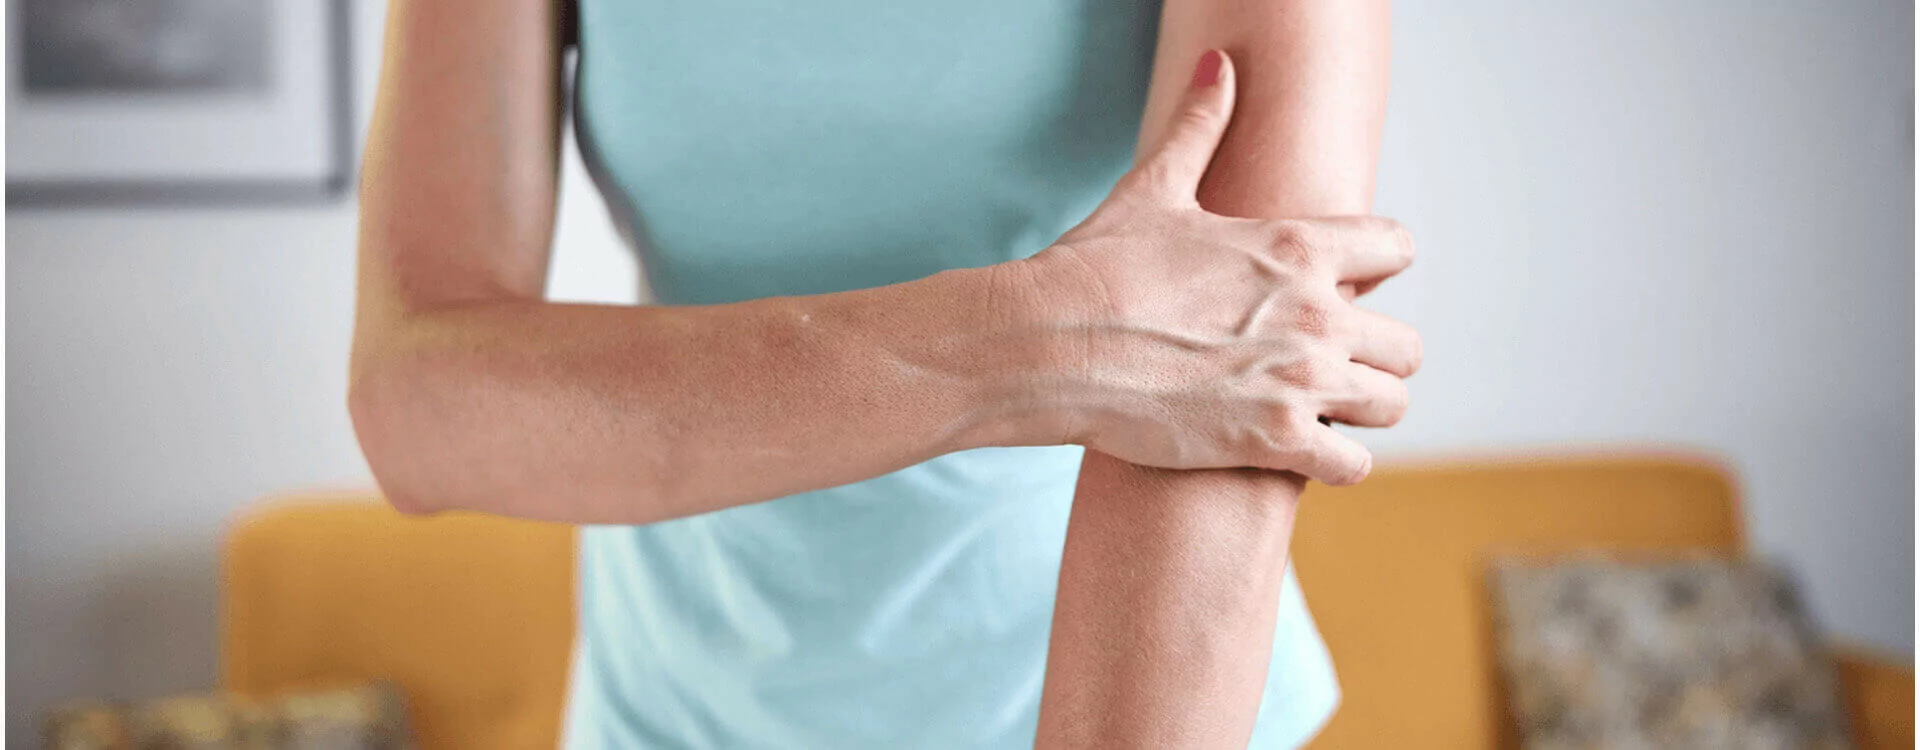 Comment gérer le quotidien avec de l’arthrose ?